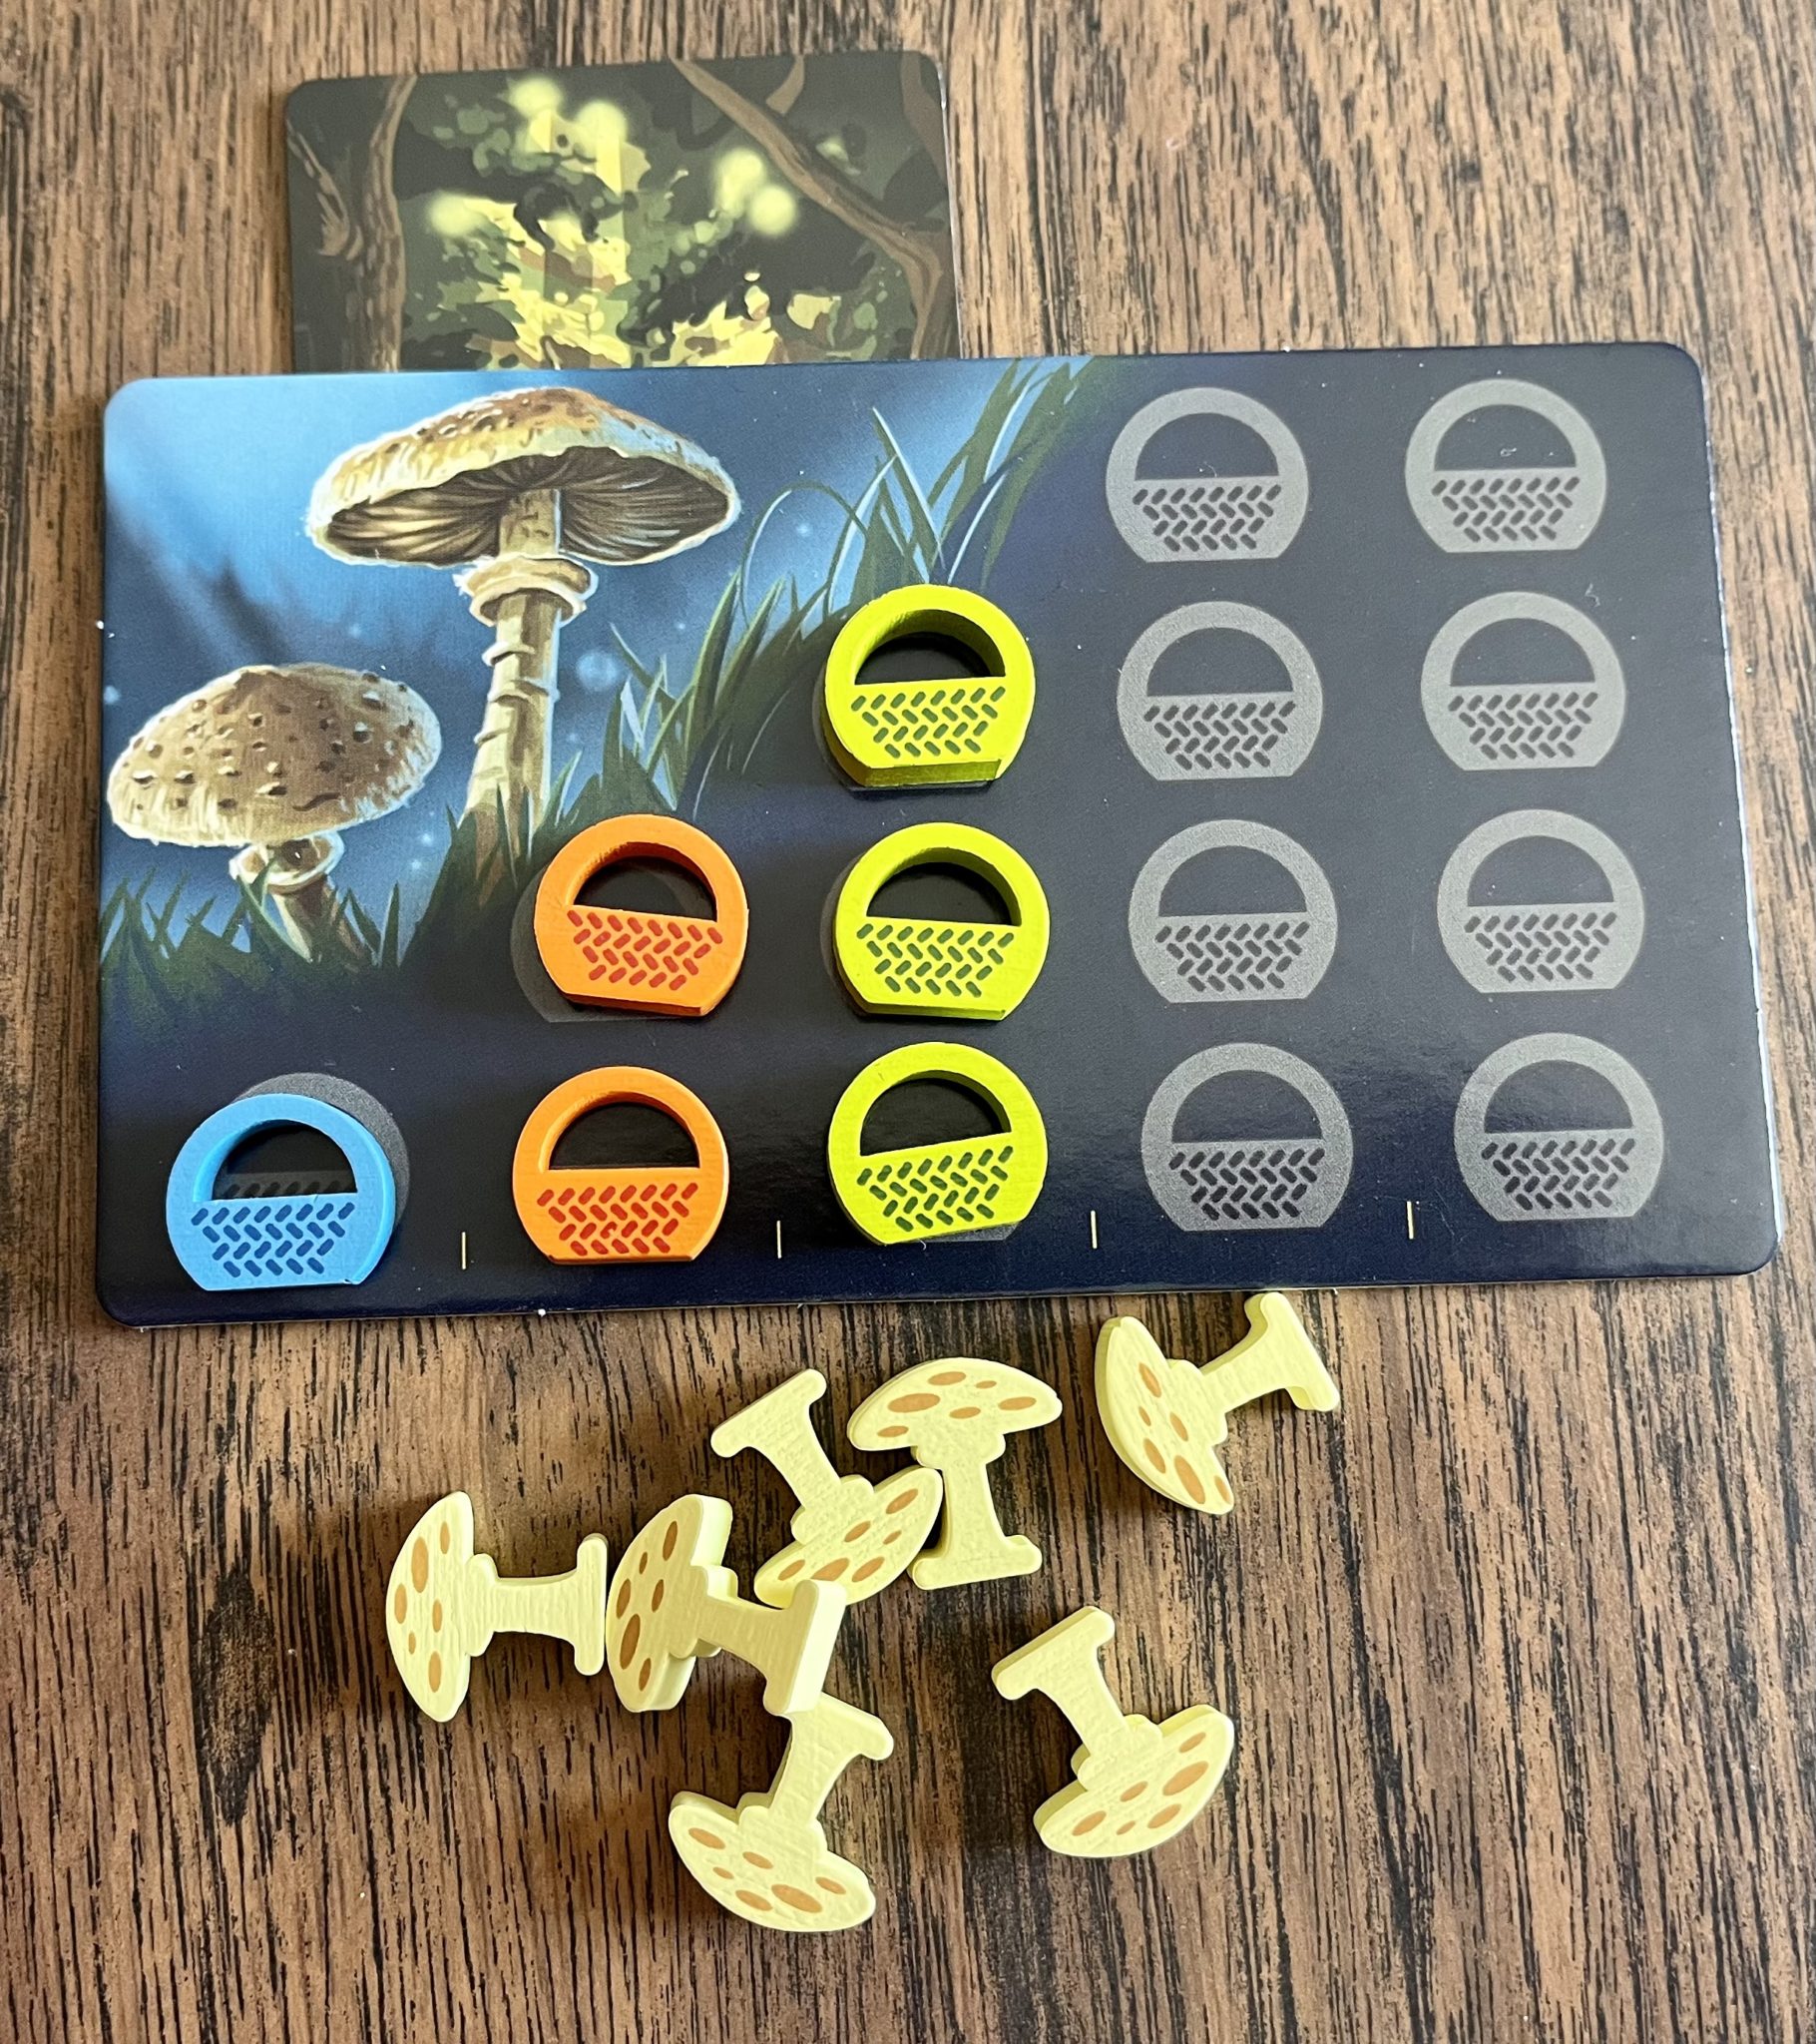 Wonder Woods mushroom type